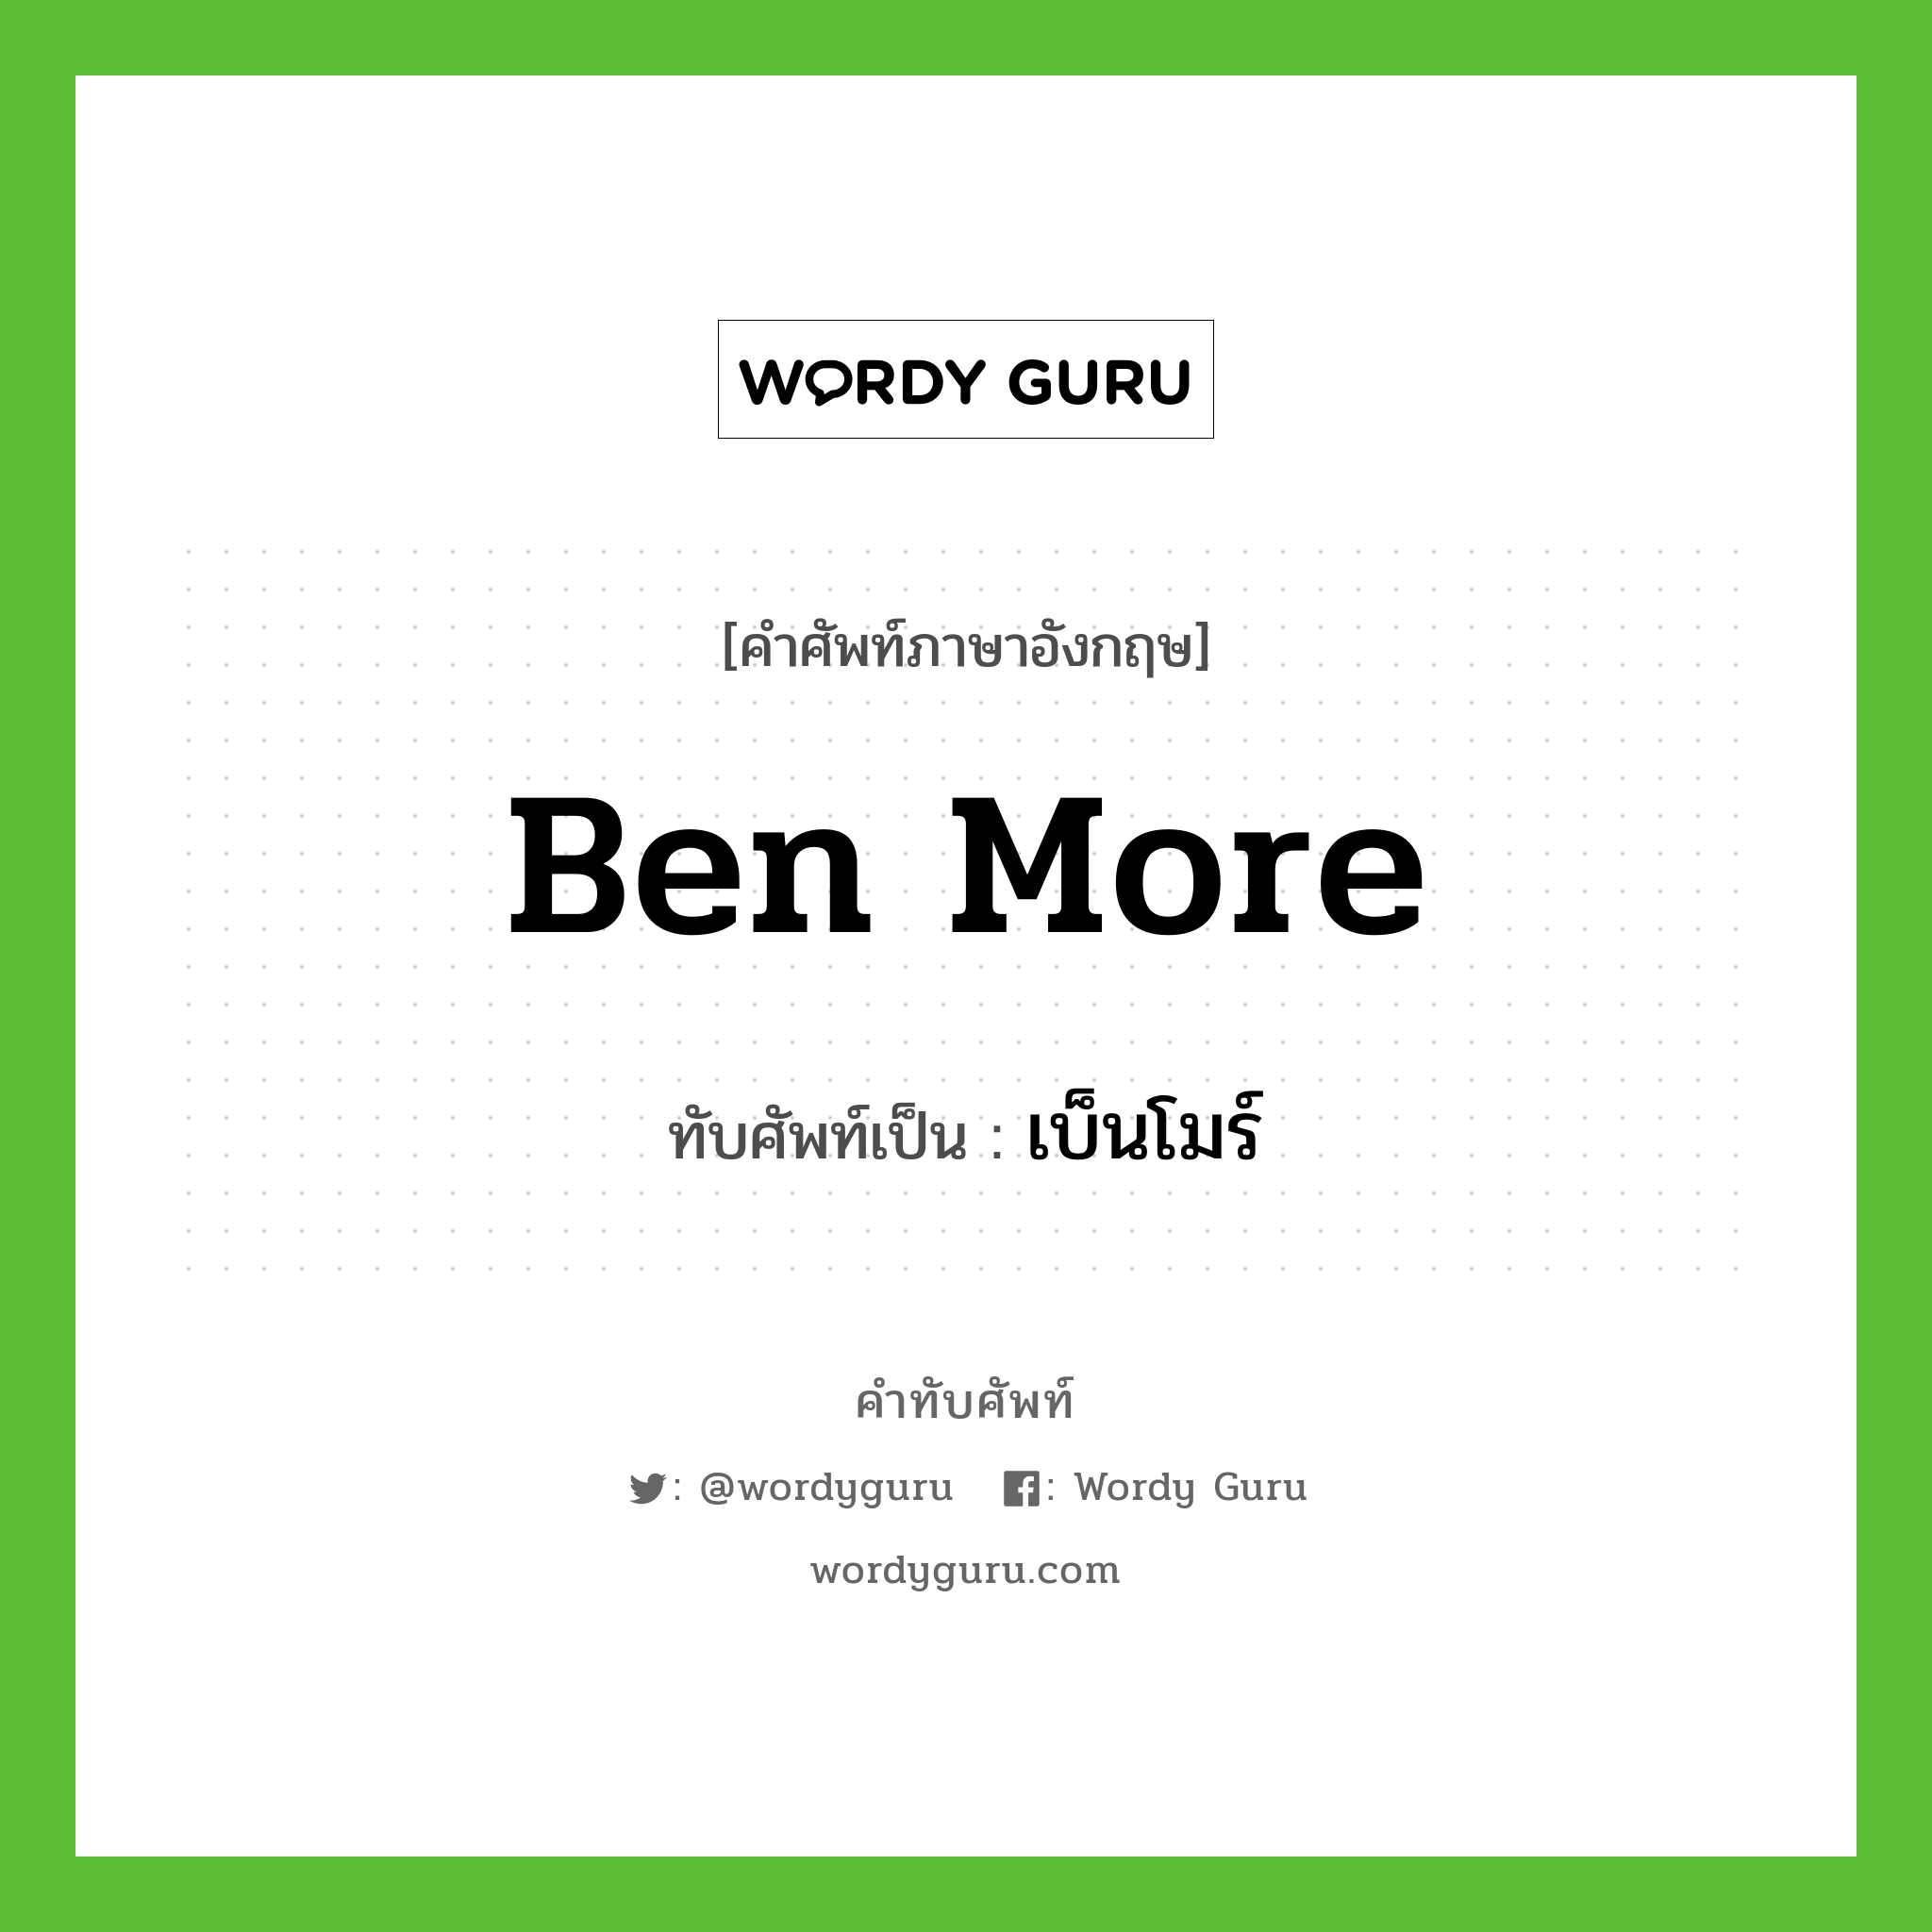 Ben More เขียนเป็นคำไทยว่าอะไร?, คำศัพท์ภาษาอังกฤษ Ben More ทับศัพท์เป็น เบ็นโมร์